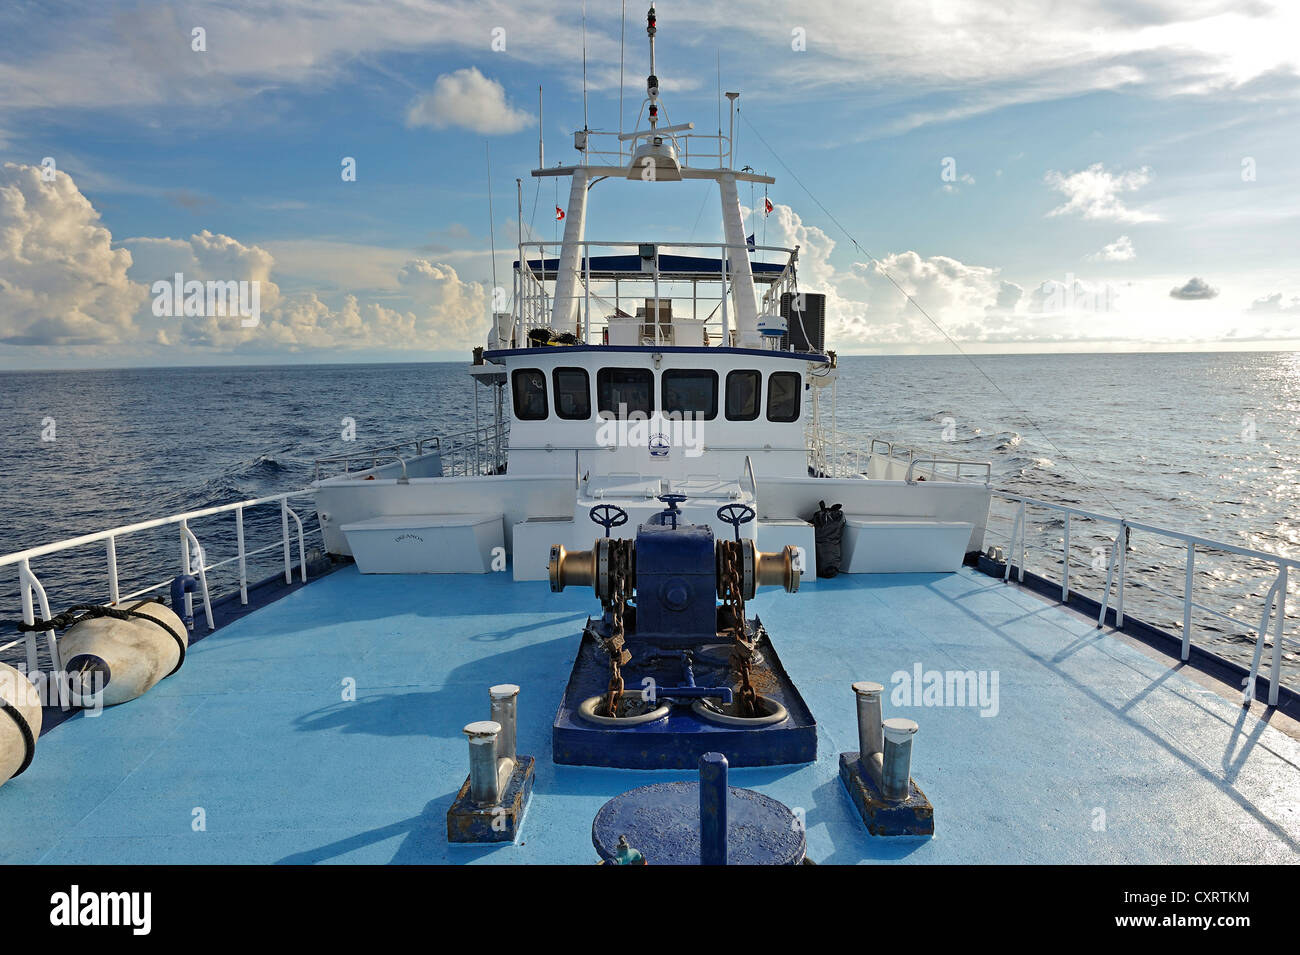 The ship Okeanoss-Aggressor, Cocos Island, Costa Rica, Central America Stock Photo